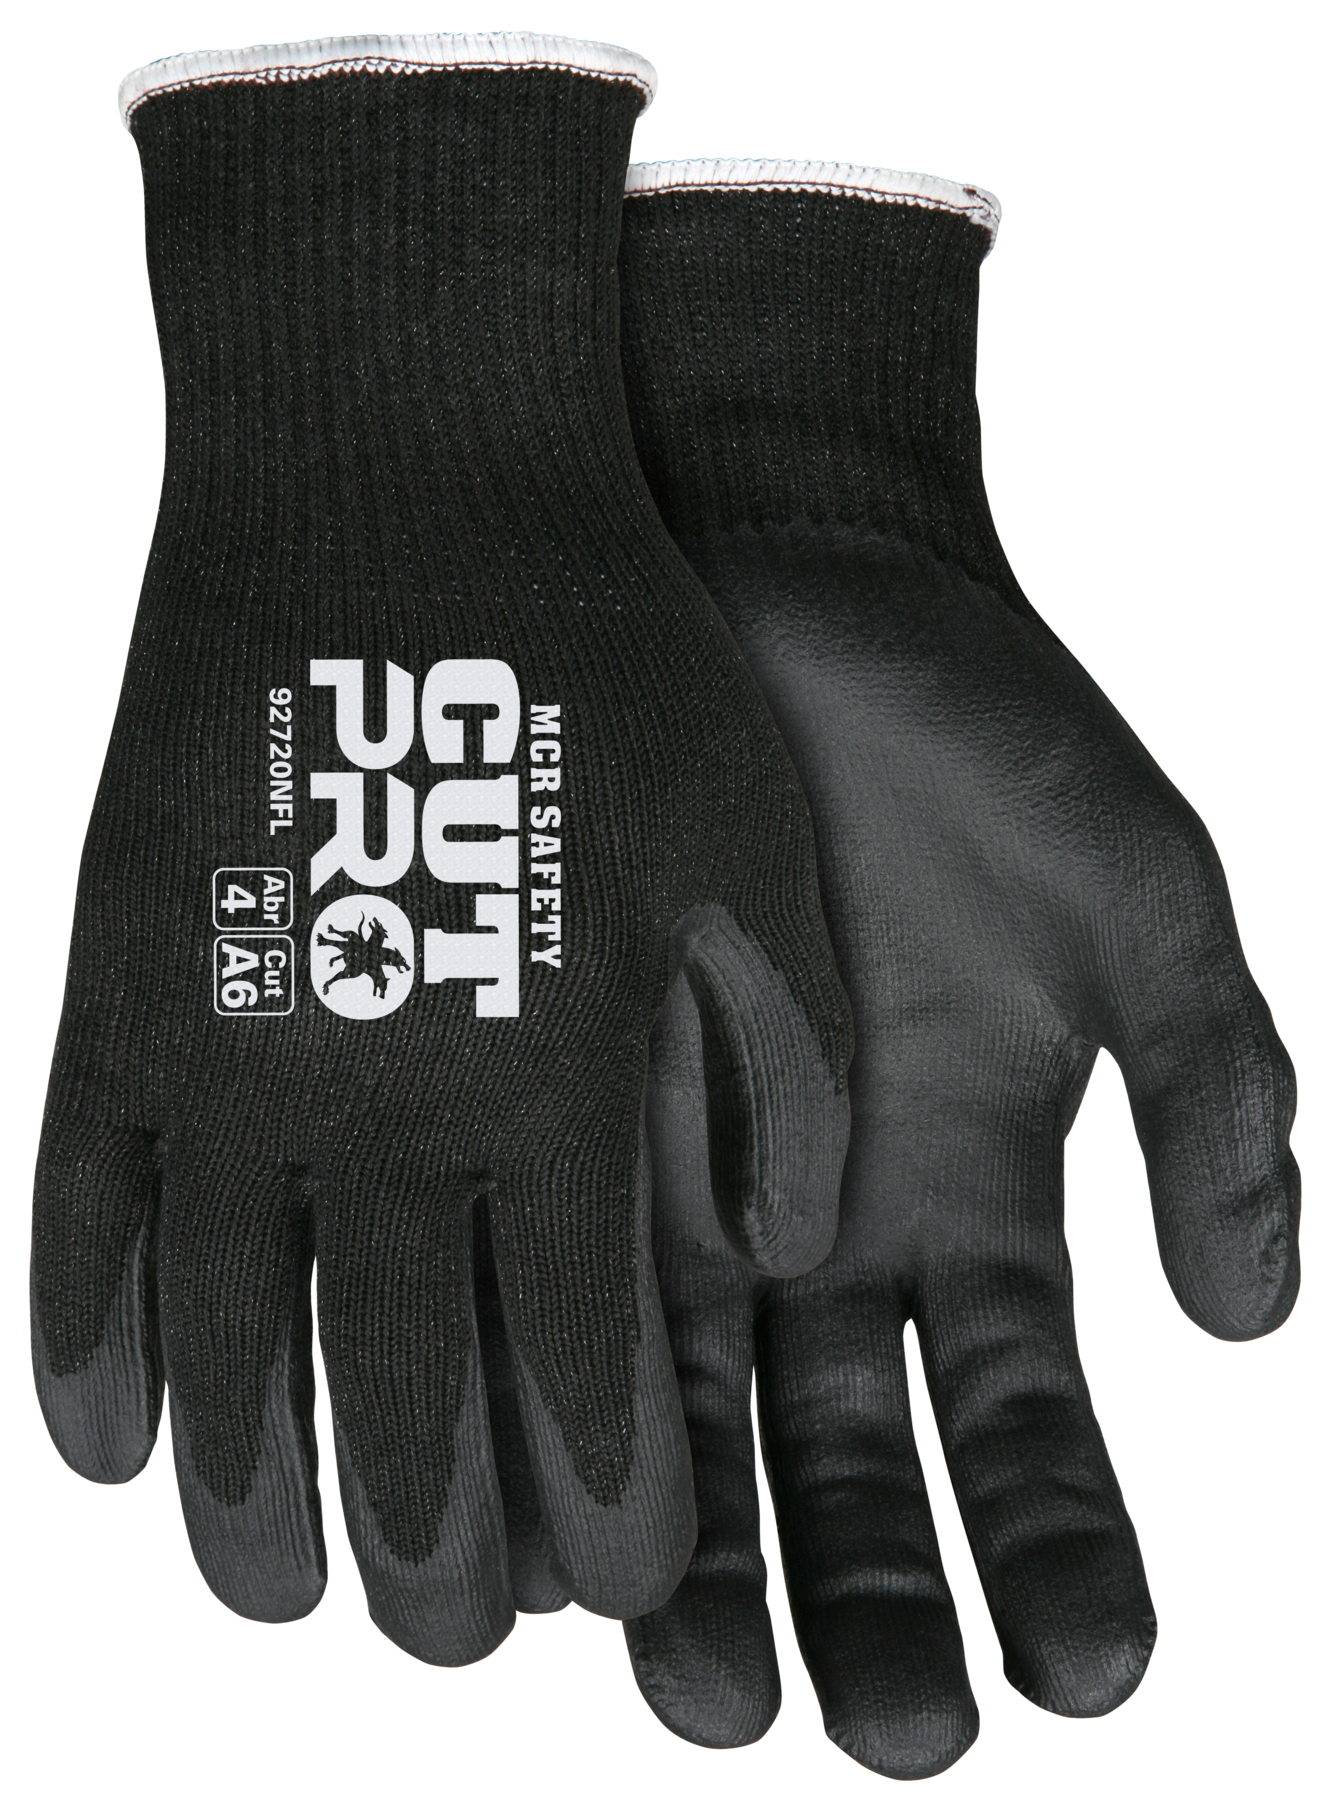 MEMPHIS CUT PRO HPPE NITRILE PALM - Cut Resistant Gloves